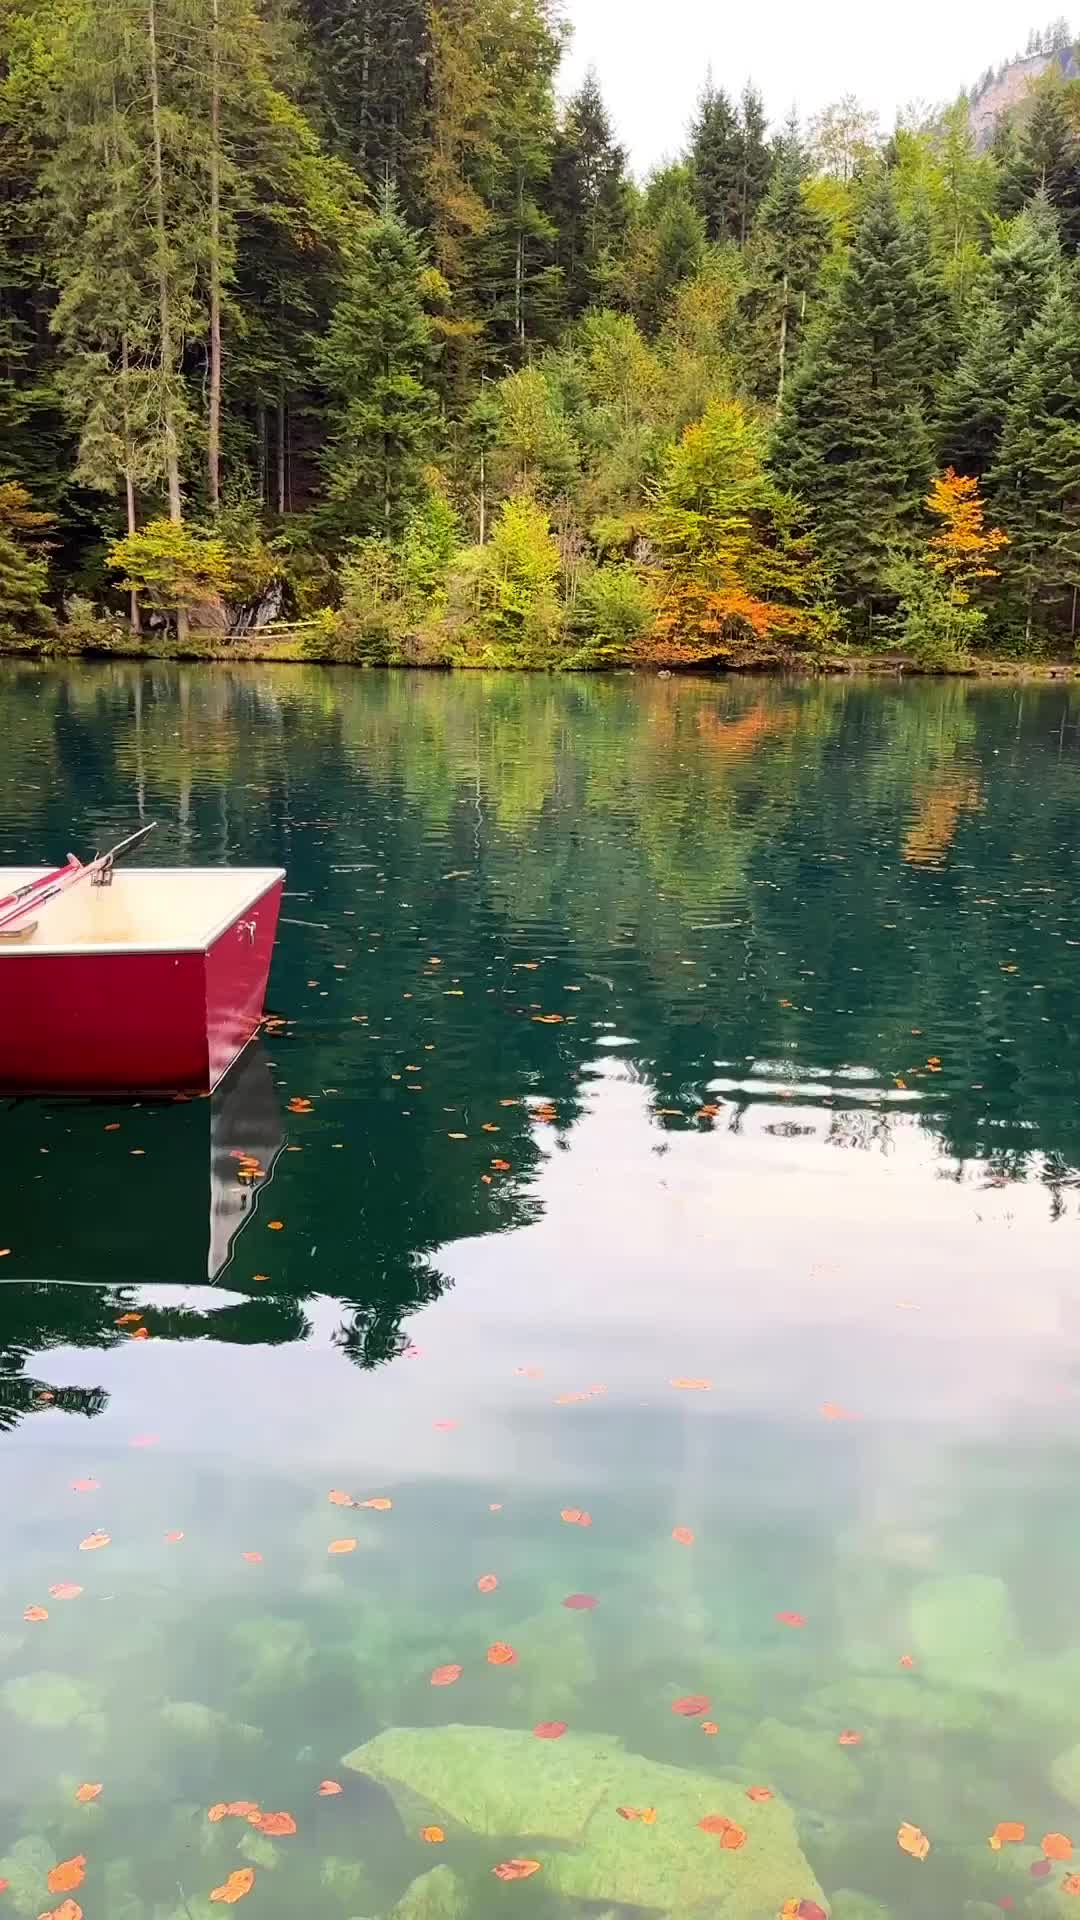 Serenity at Blausee Lake, Switzerland's Hidden Gem